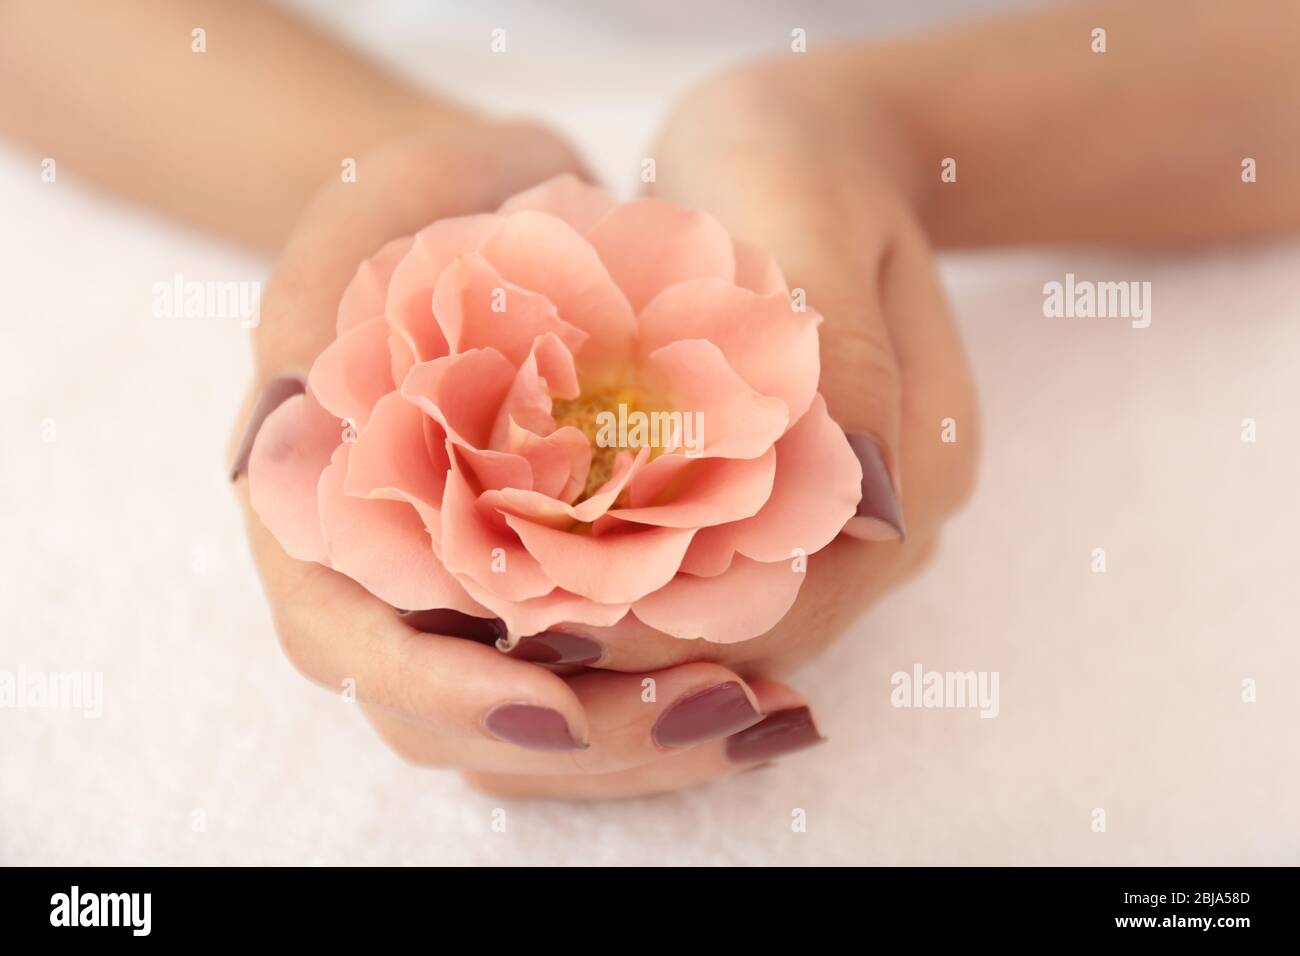 Mains féminines avec une manucure marron tenant la fleur sur le fond du tissu Banque D'Images